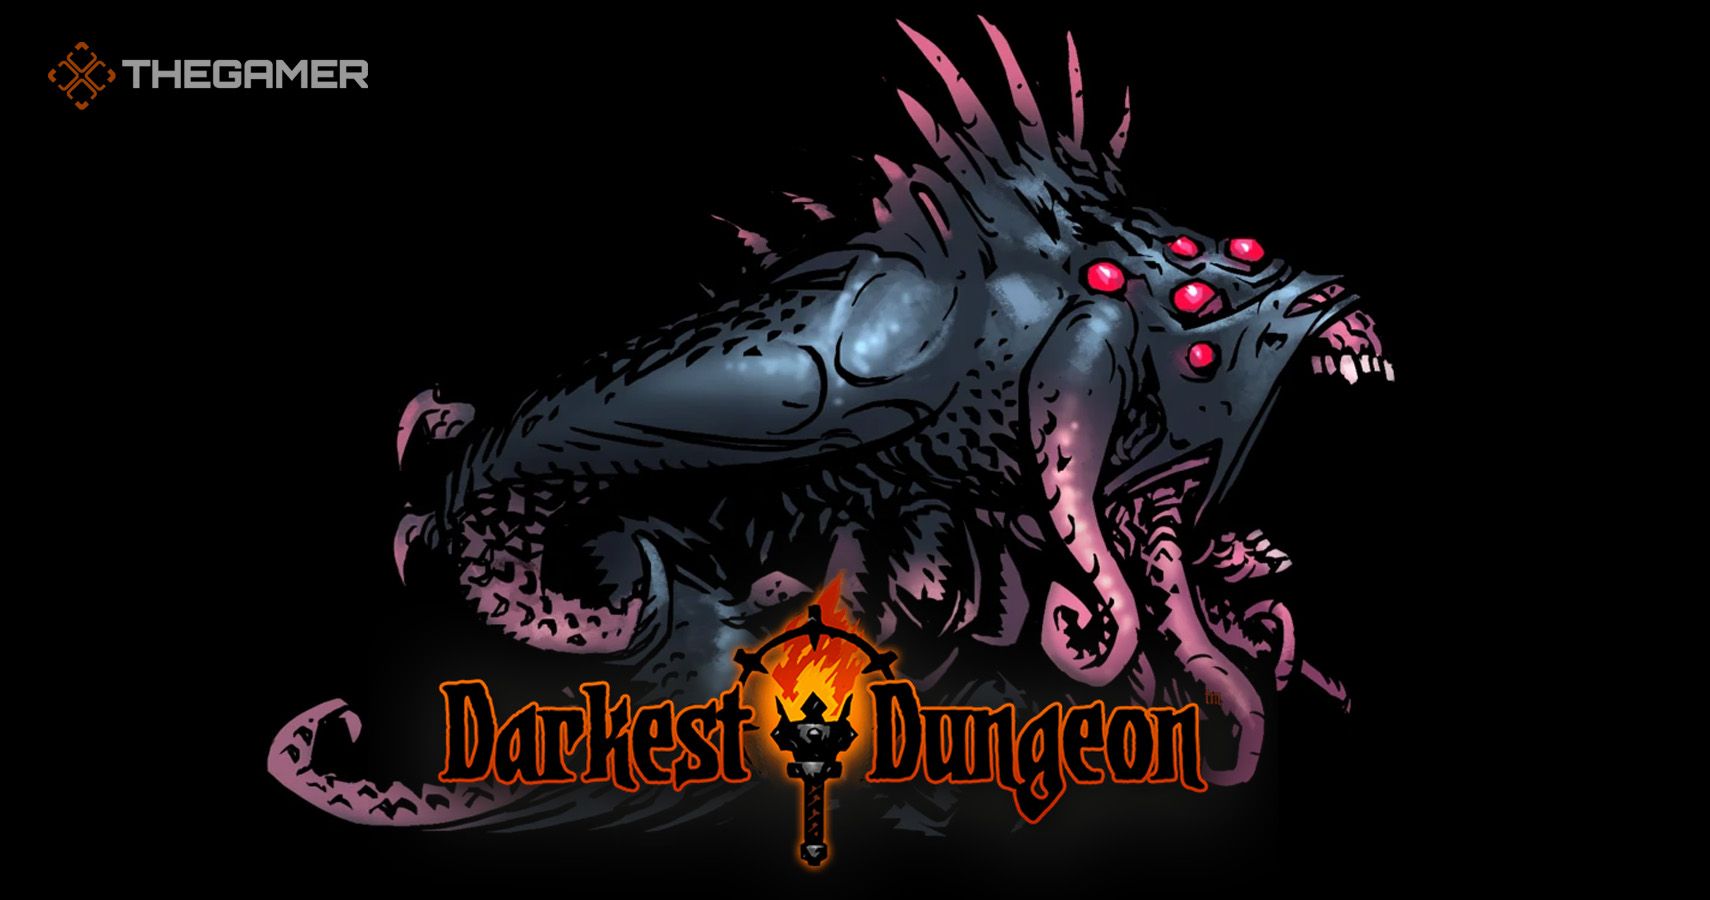 shambler darkest dungeon 2